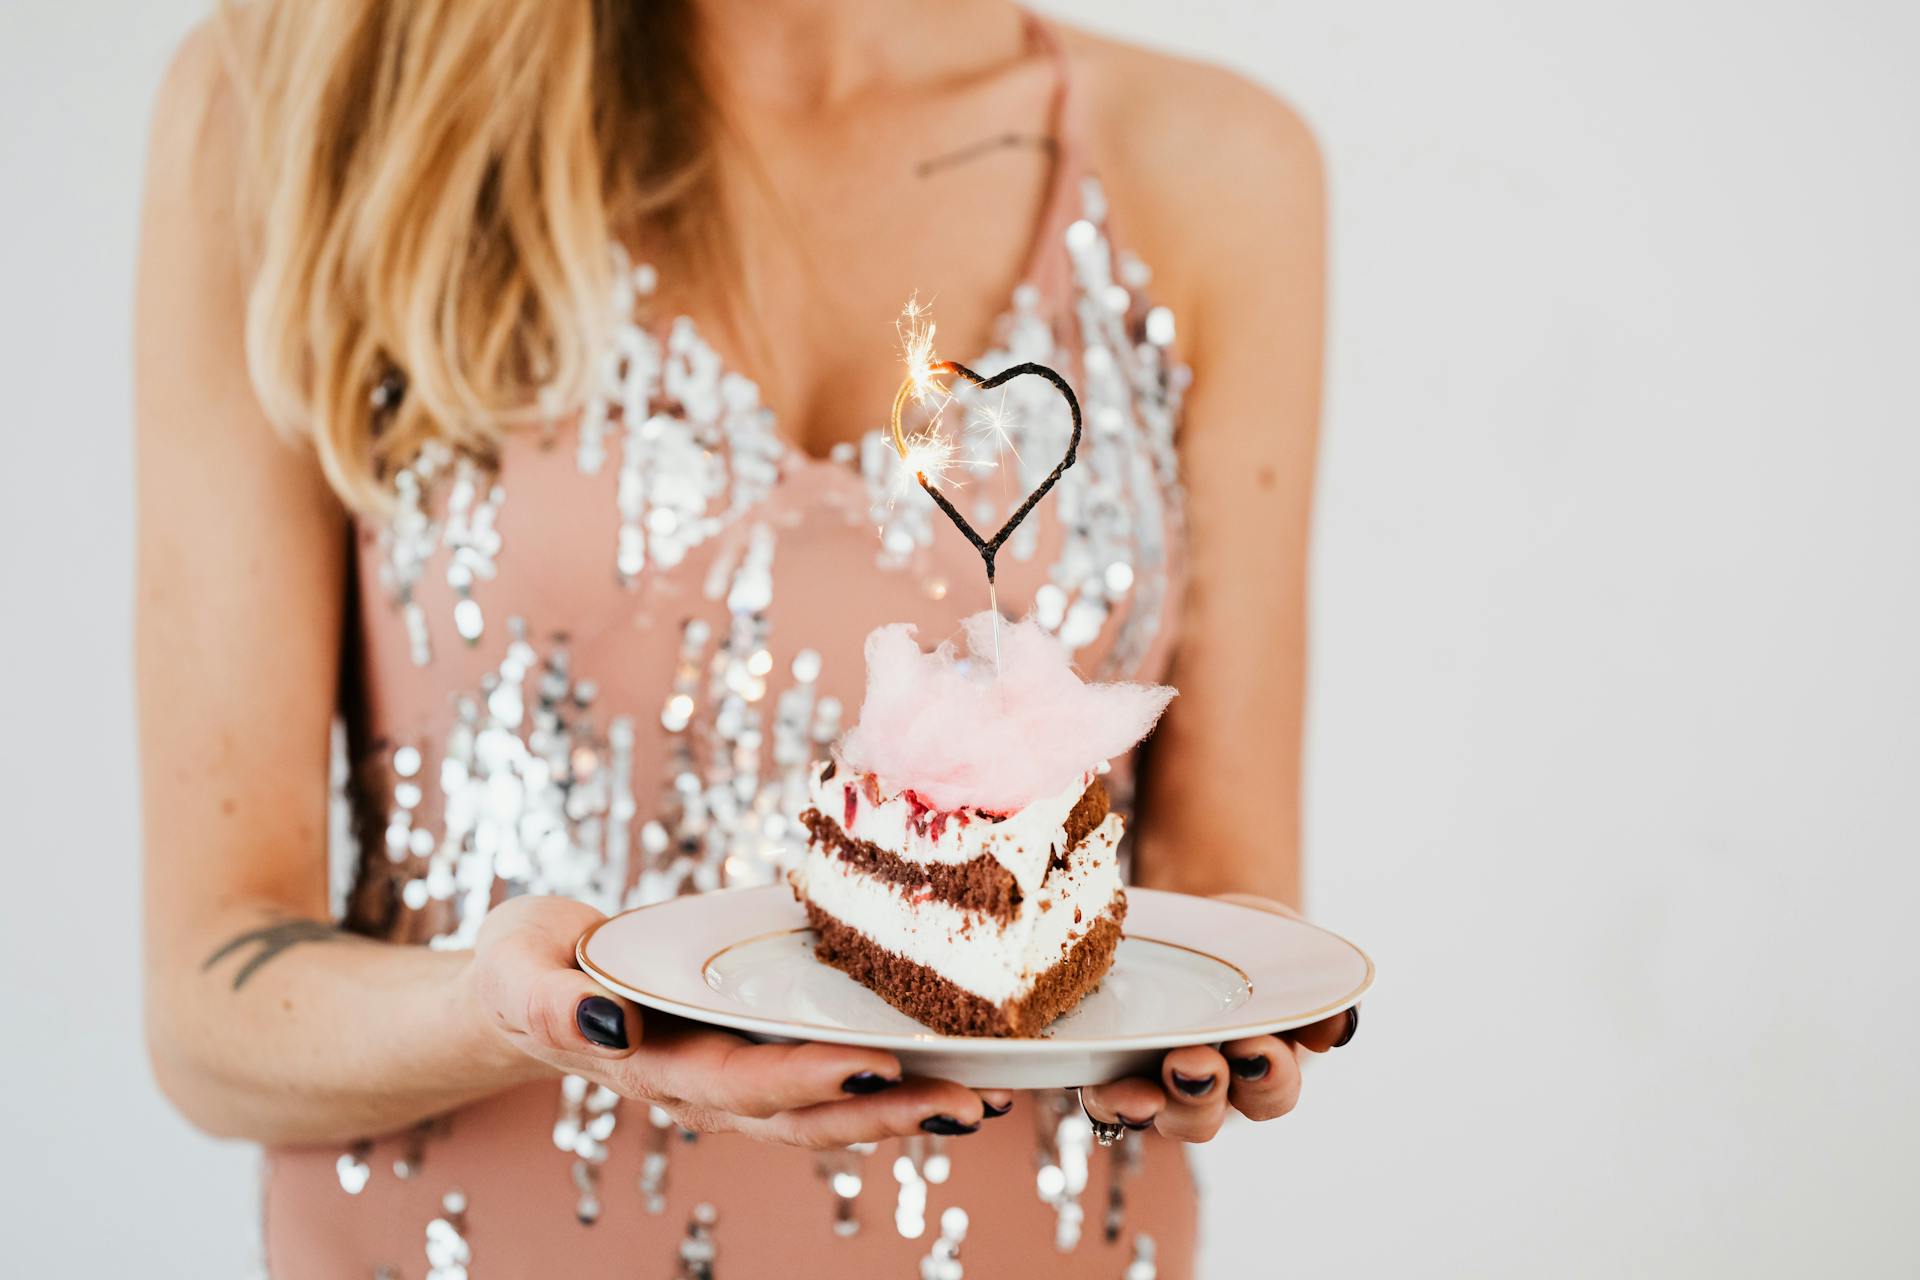 Une femme tenant un gâteau | Source : Pexels